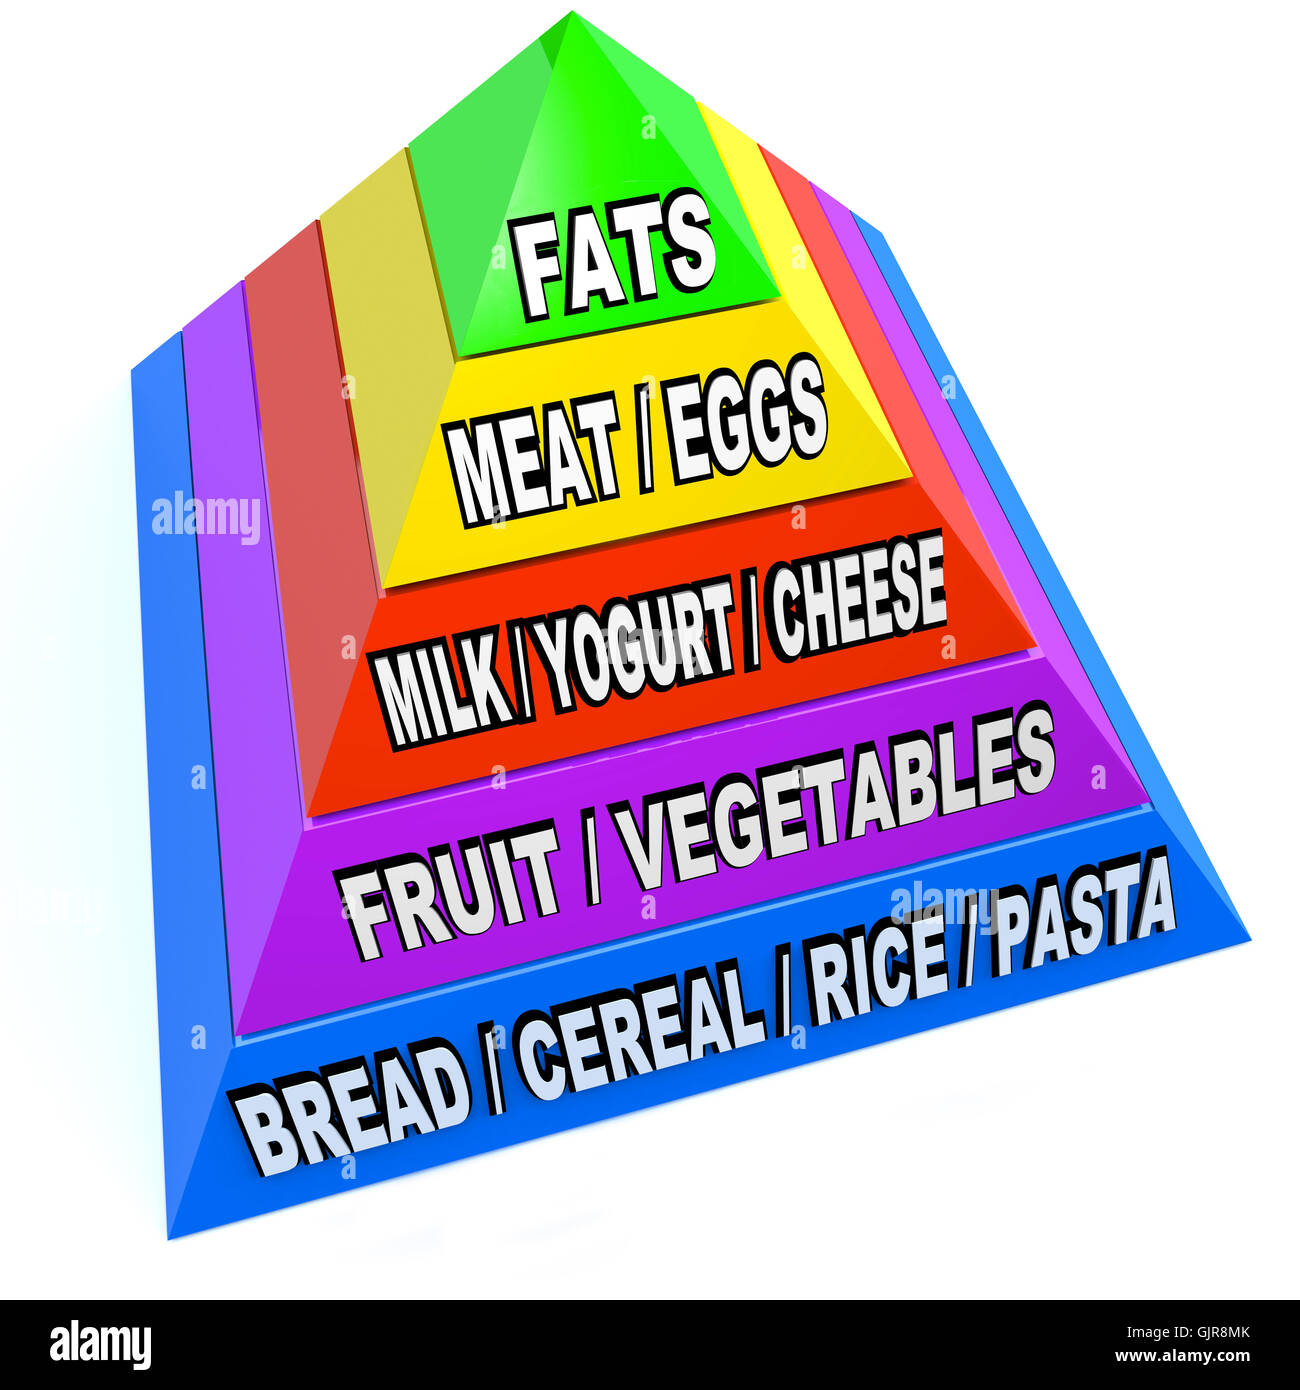 Nuova piramide alimentare raccomandato di porzioni giornaliere Foto Stock